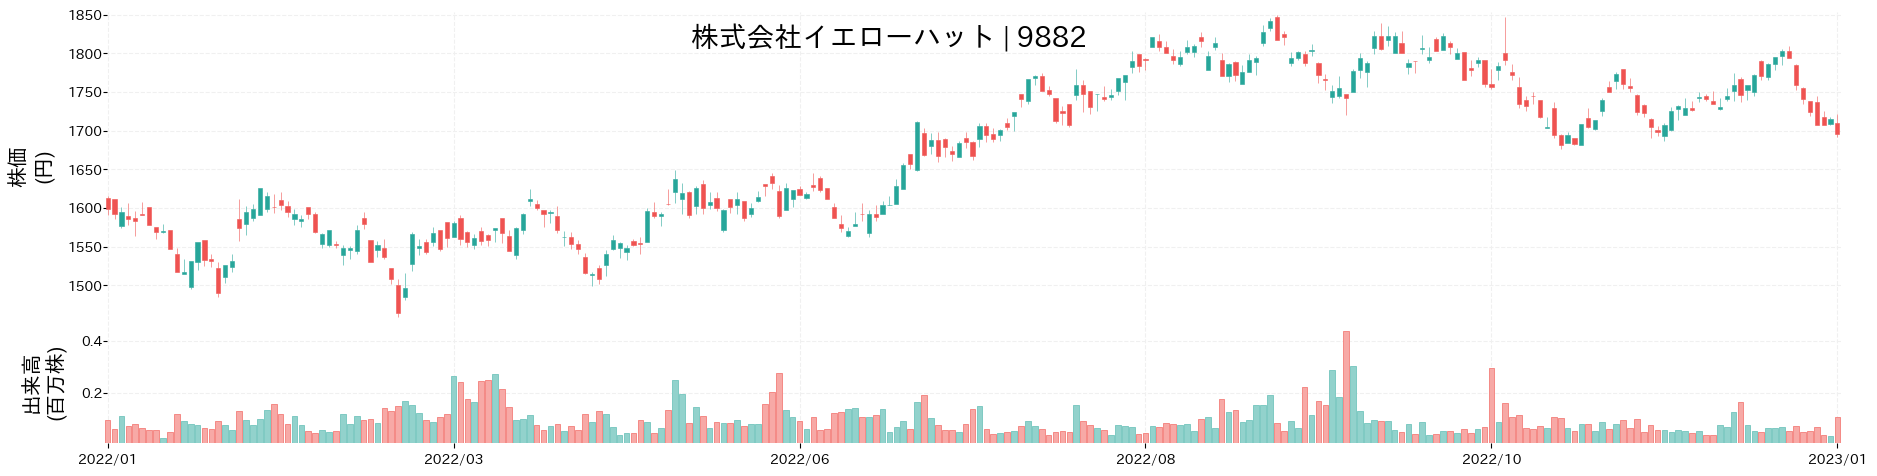 イエローハットの株価推移(2022)